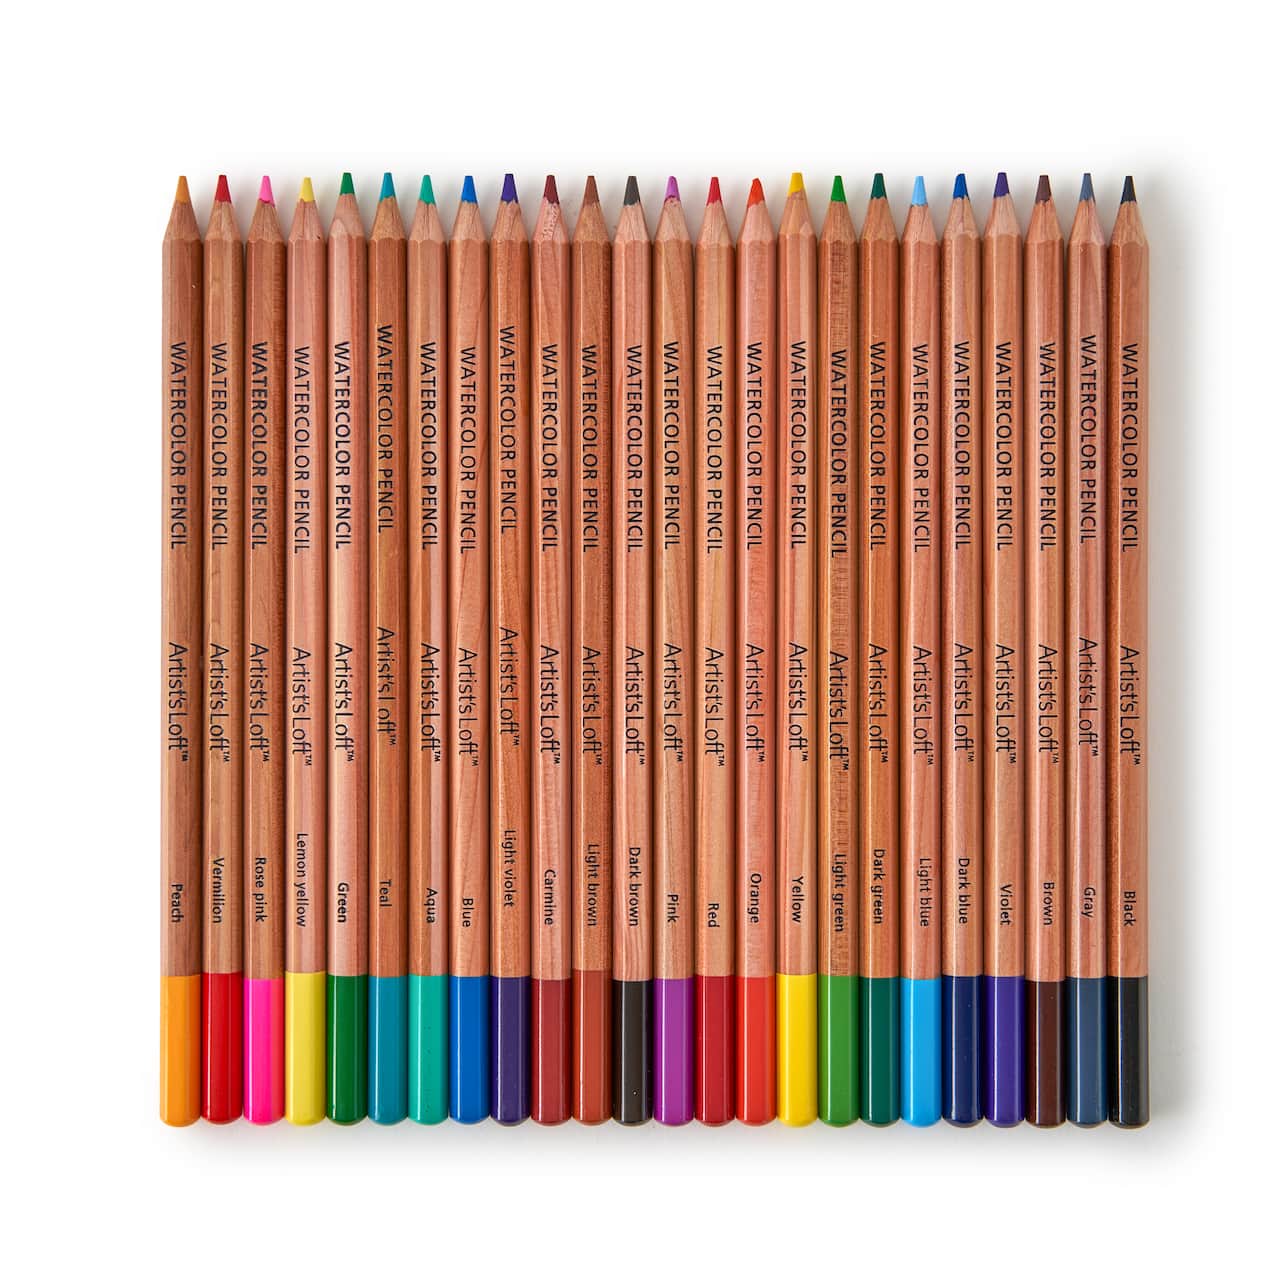 Watercolor Pencil Set by Artist's Loft™